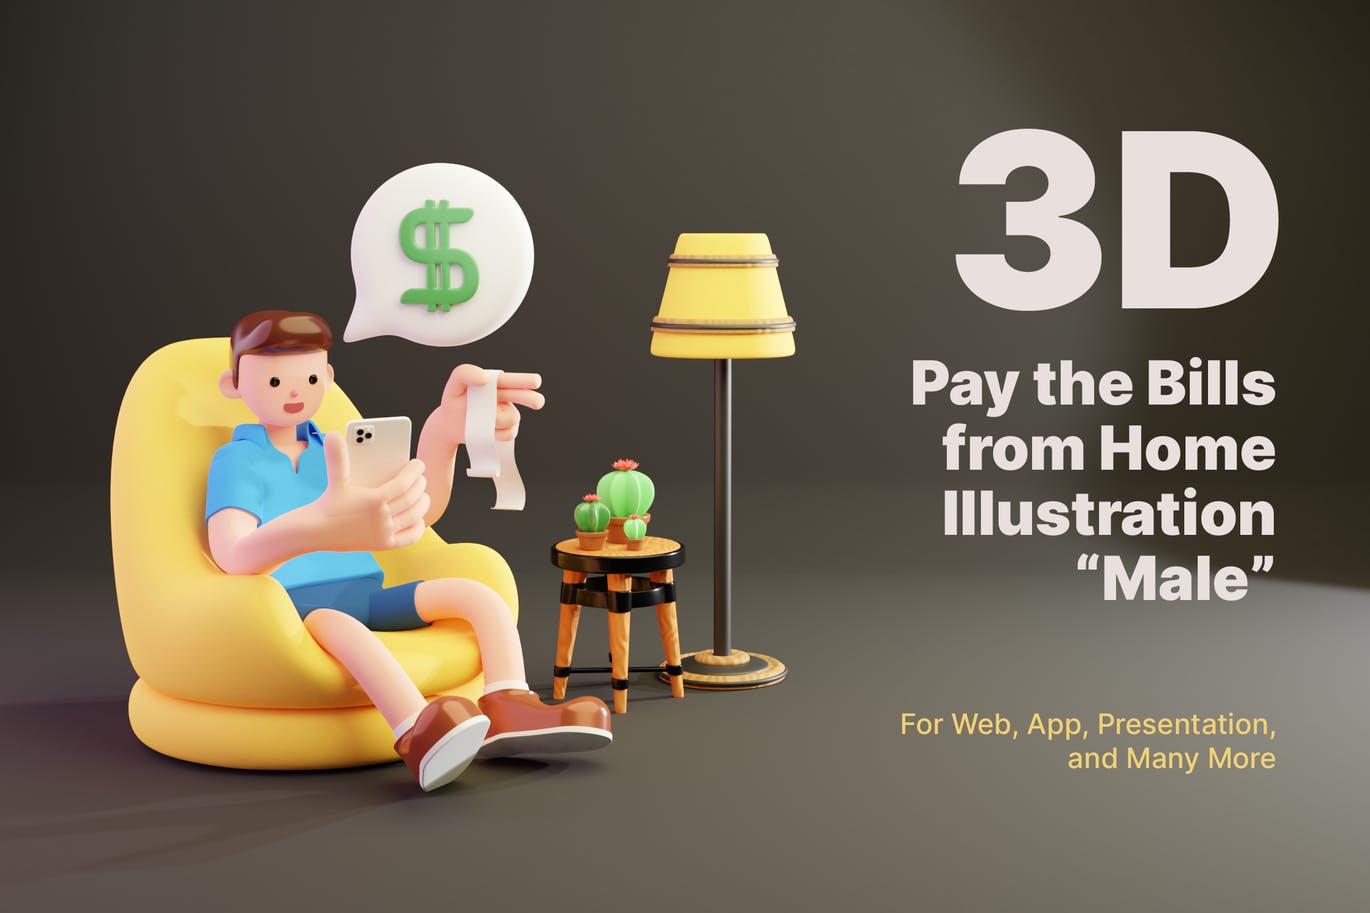 三维渲染在线购物手机支付的男性角色3D插画素材 3D Pay